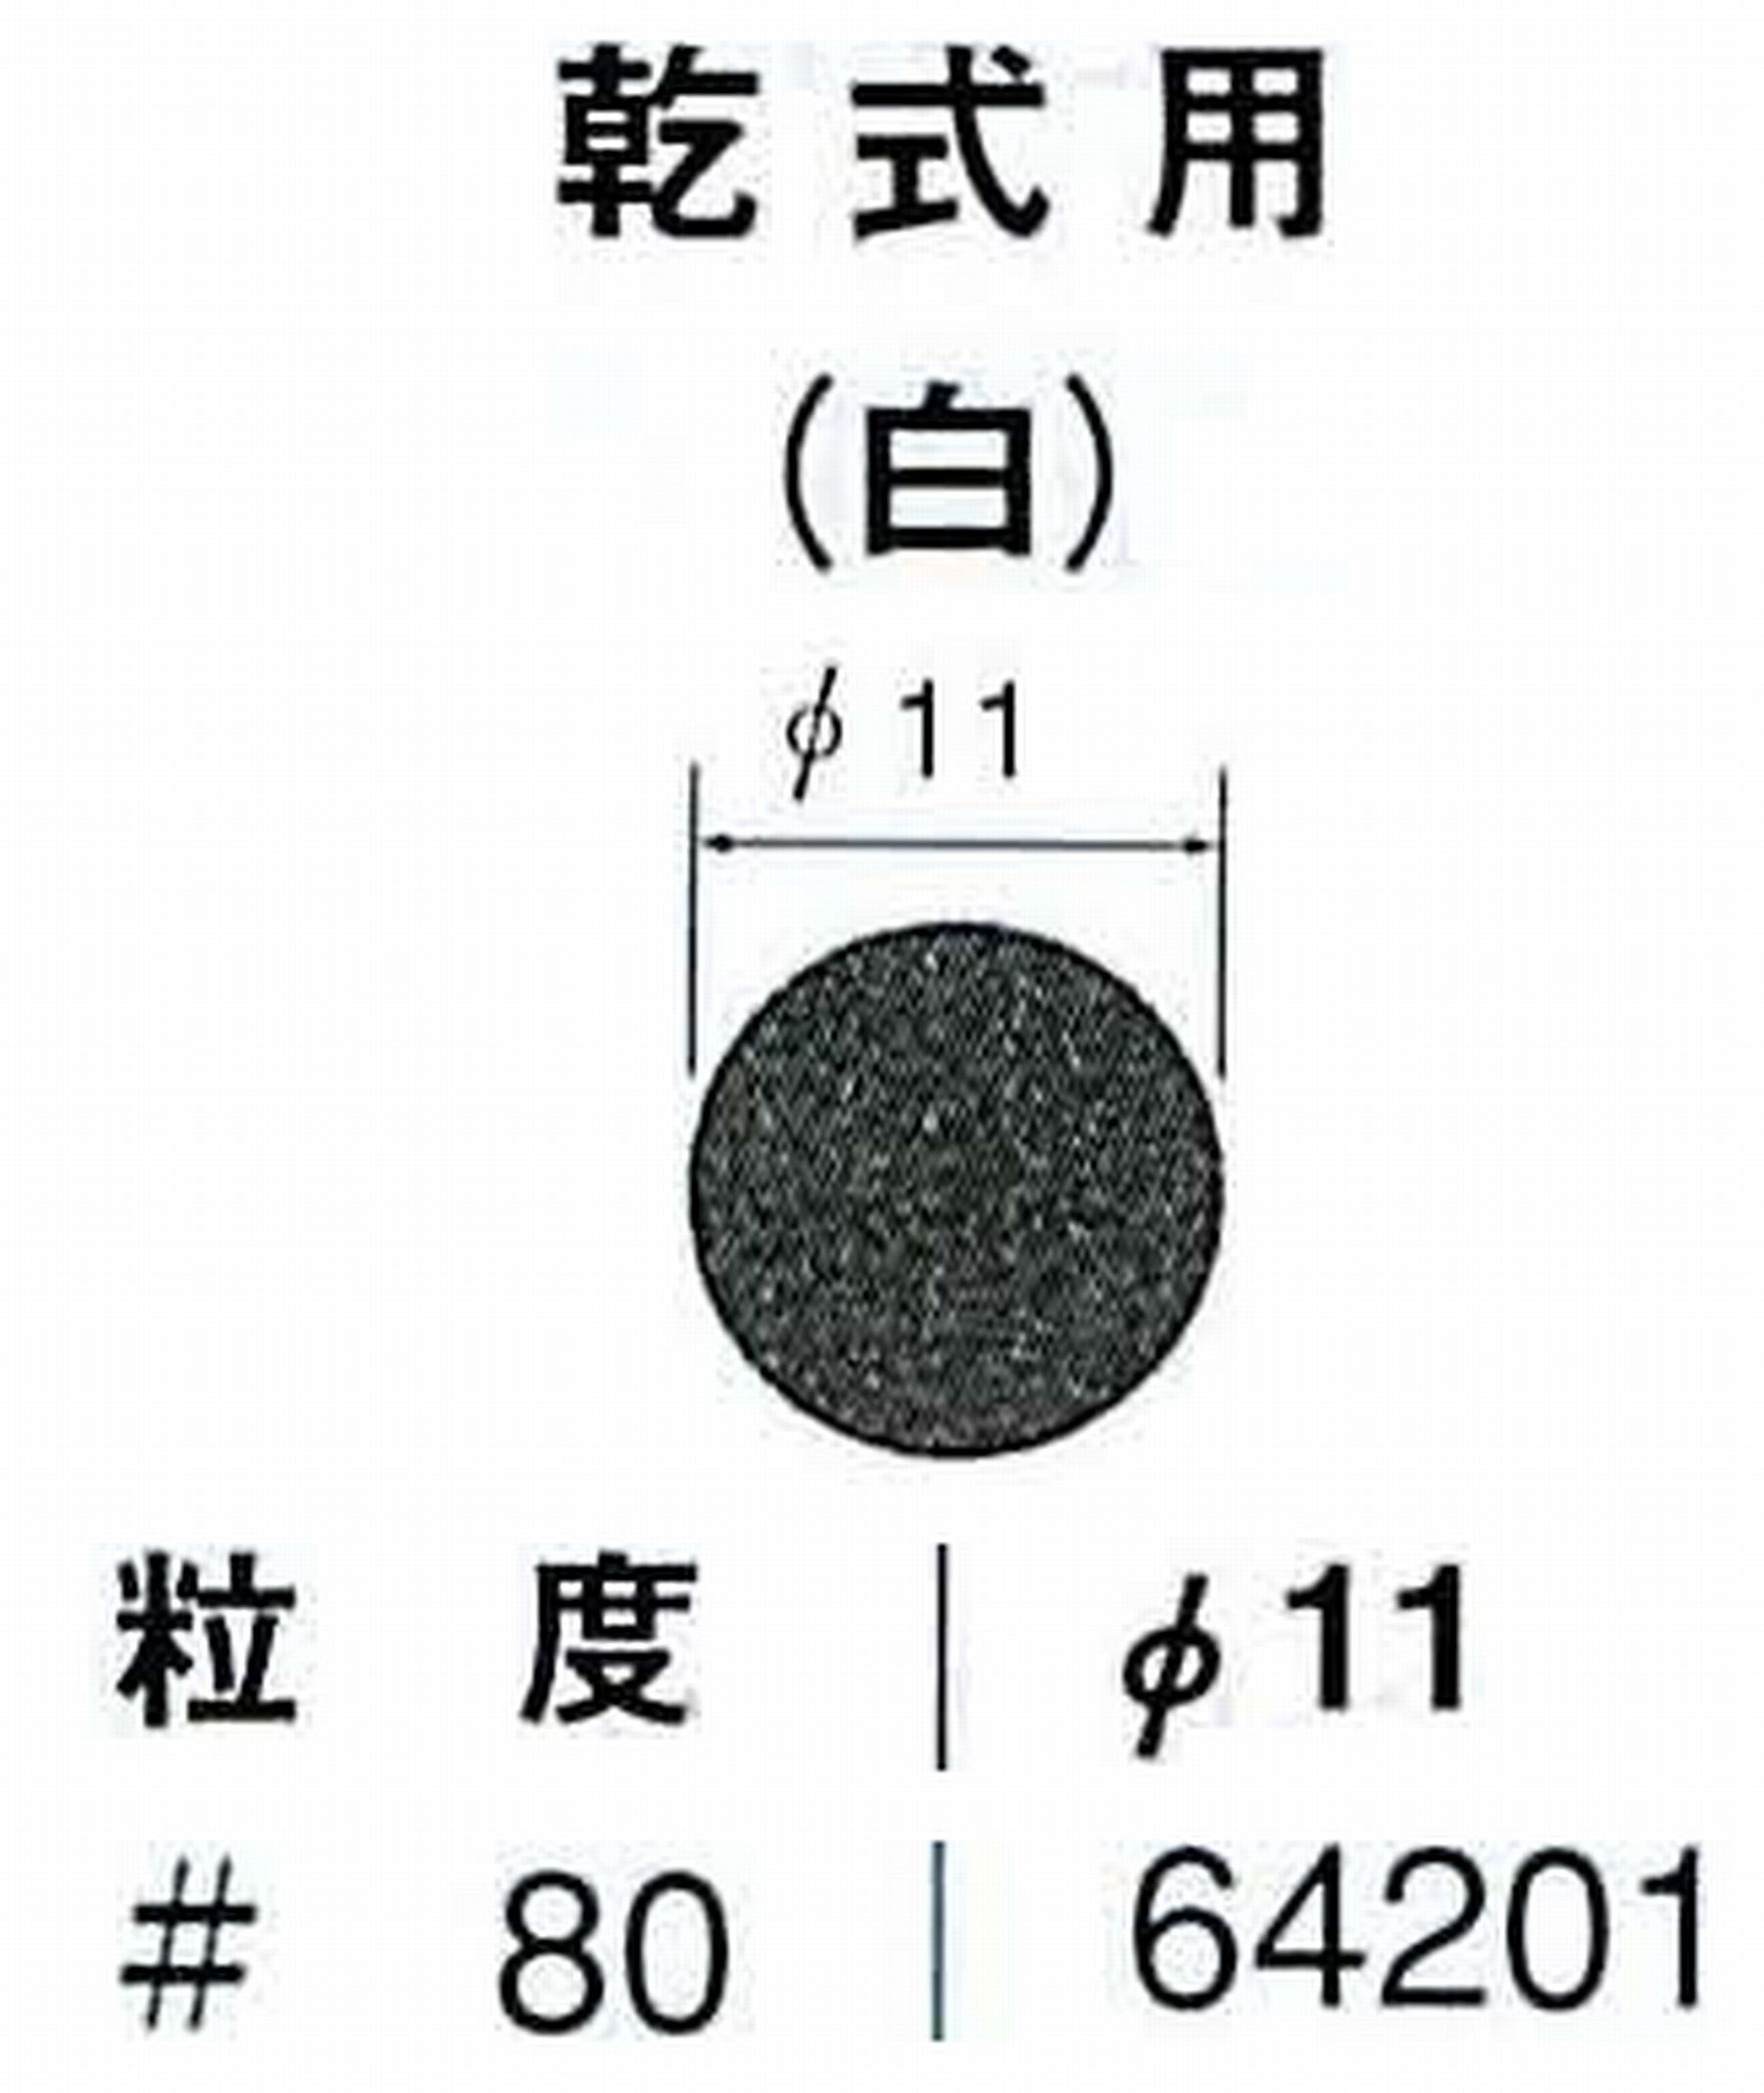 ナカニシ/NAKANISHI アングルグラインダ(電動・エアー) アングルアタッチメント専用工具 サンドペーパーディスク(紙基材タイプ)裏面のり処理 64201